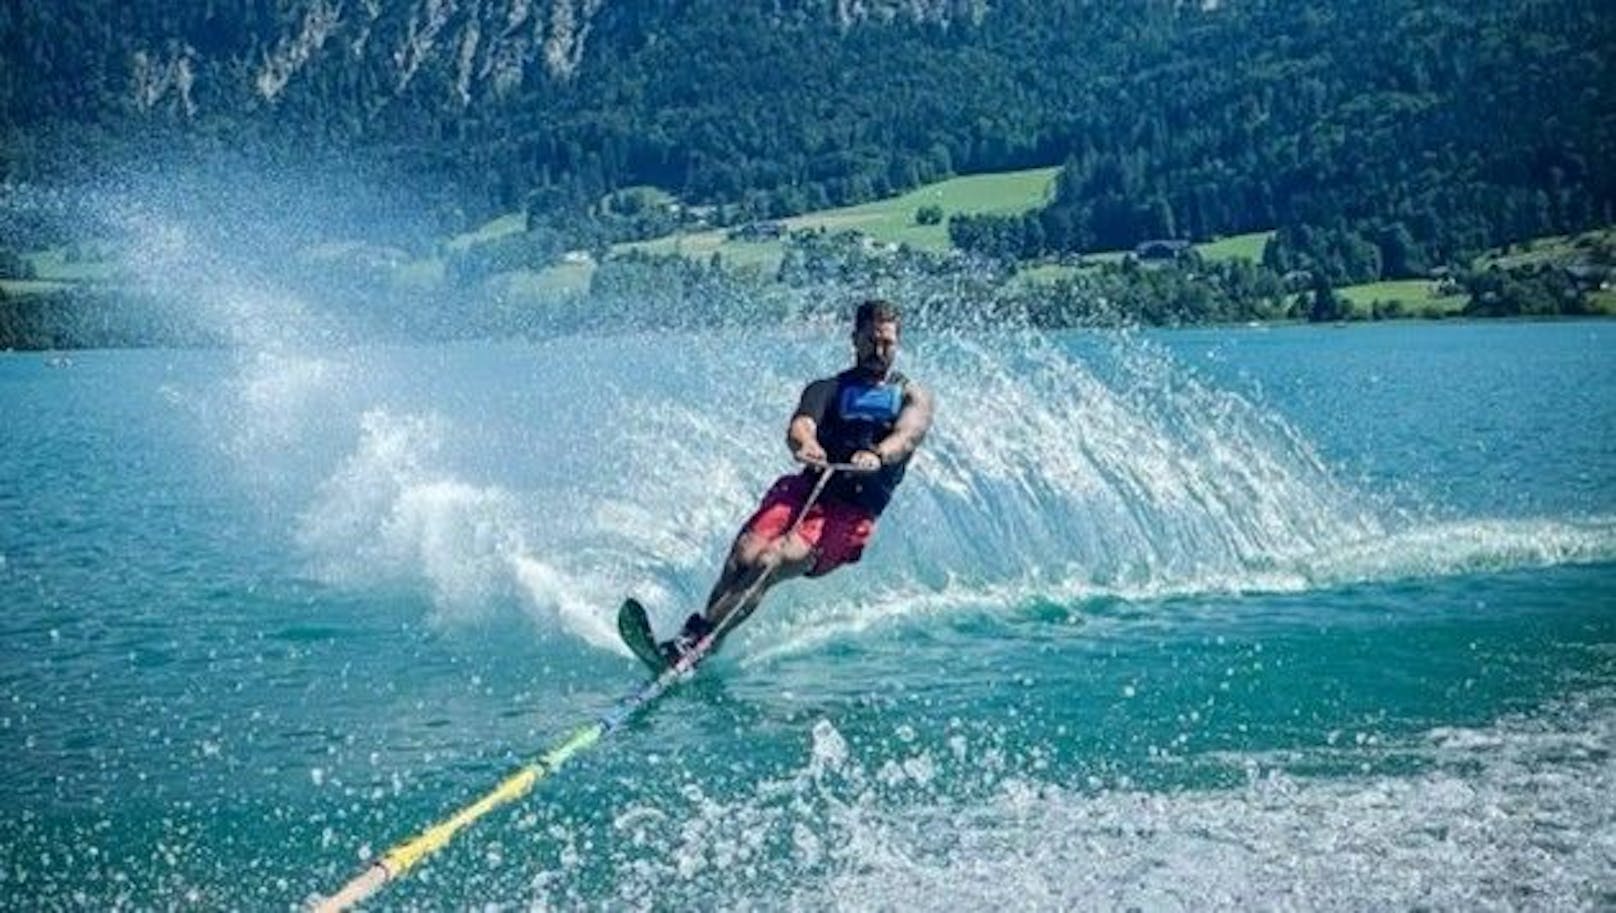 Marcel Hirscher beim Wasserskifahren am Wolfgangsee.